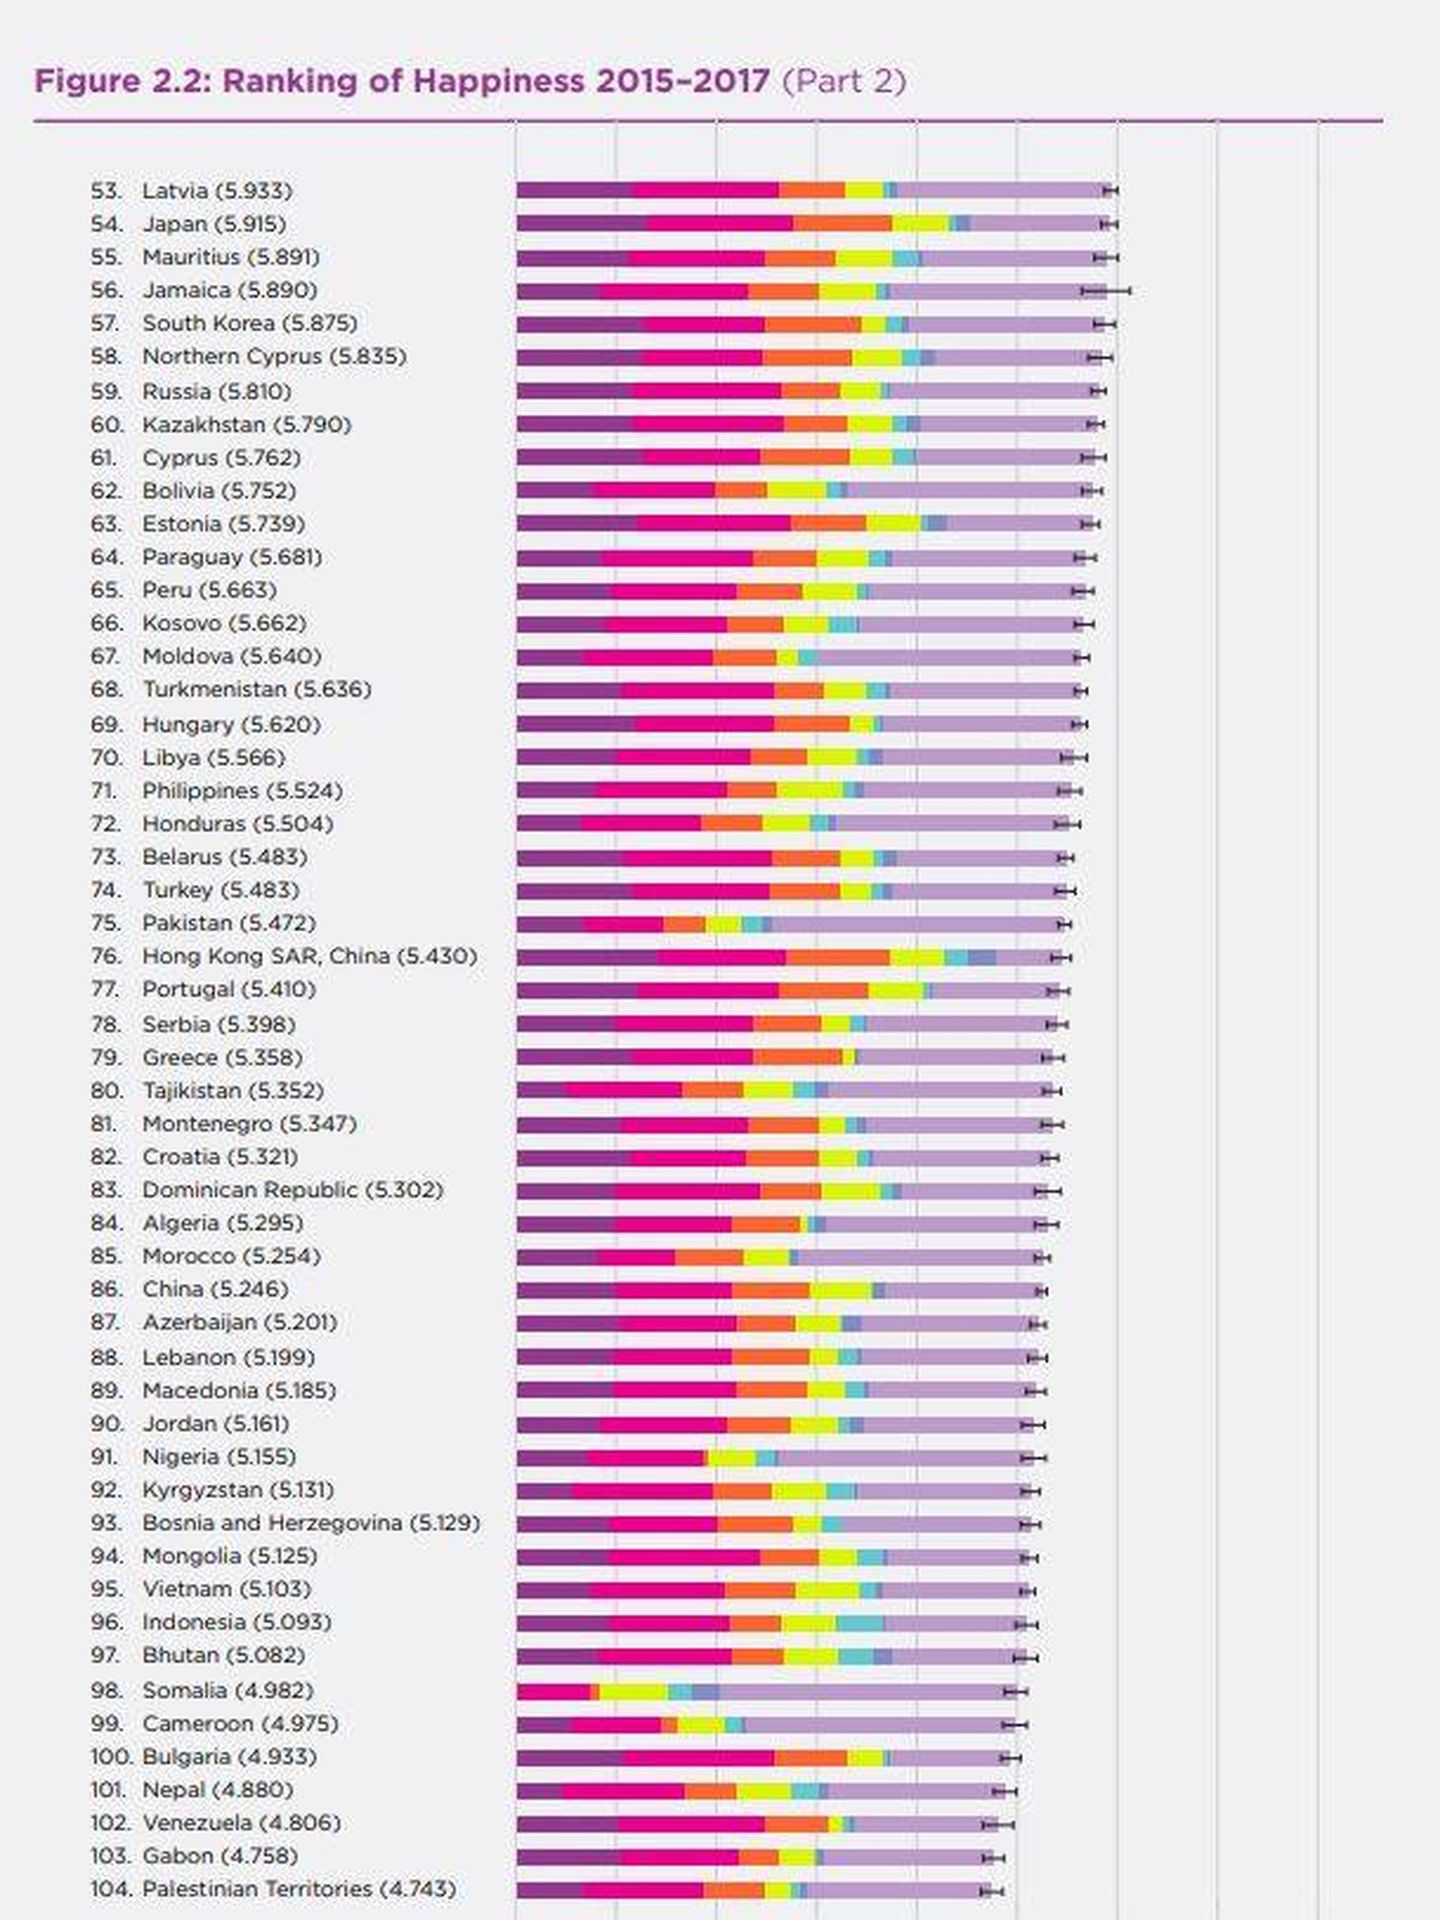 Bután, en el puesto 97 del índice de felicidad de la ONU 